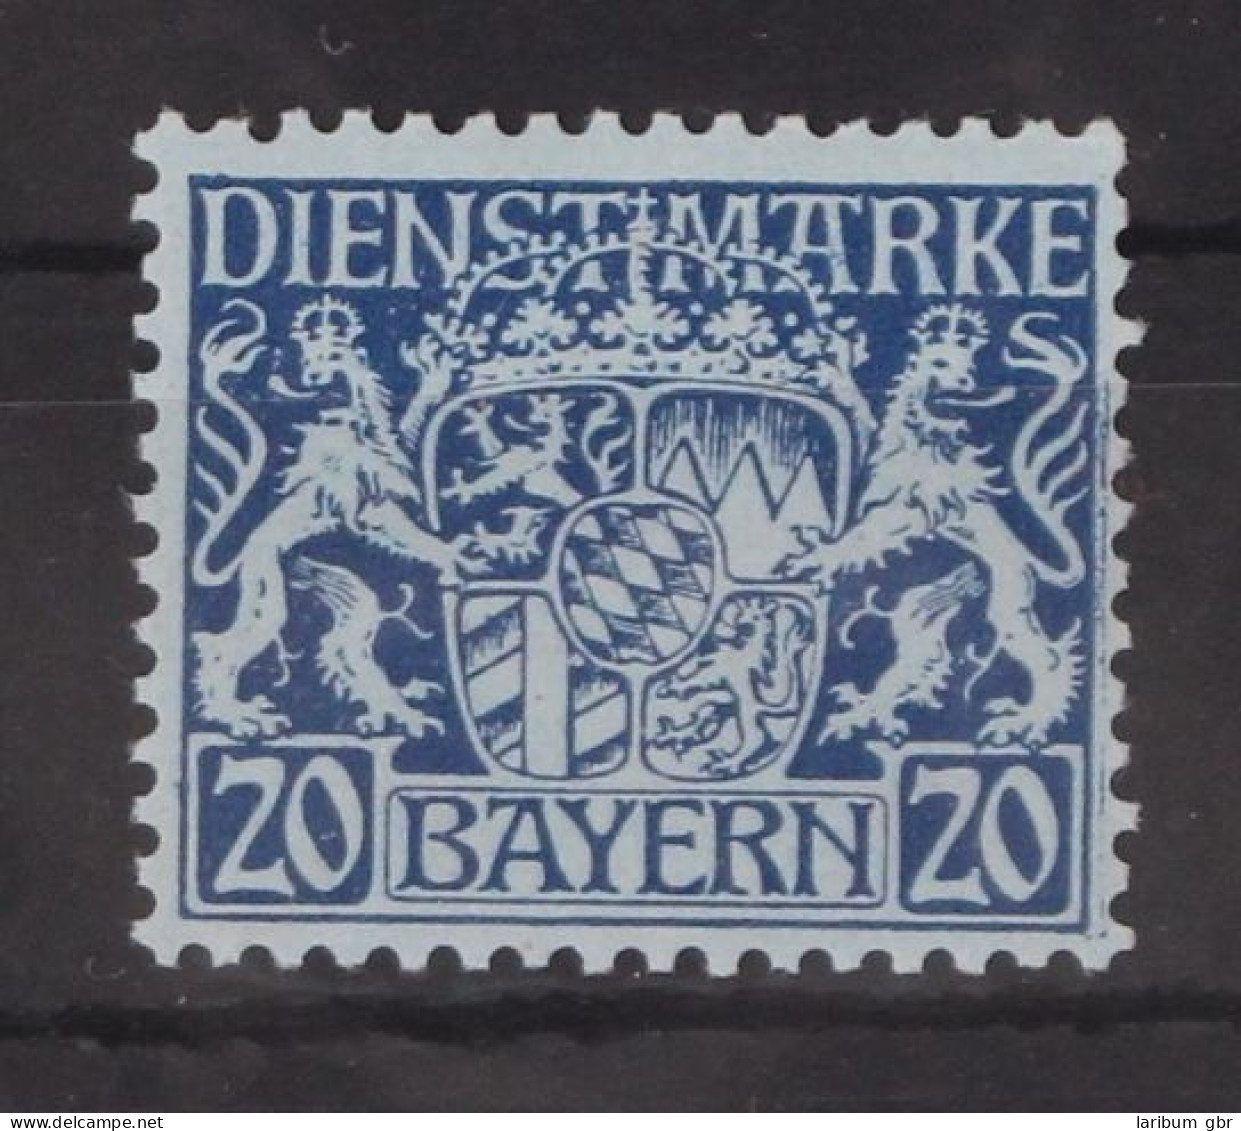 Bayern Dienstmarken 20 Postfrisch #GM097 - Ungebraucht